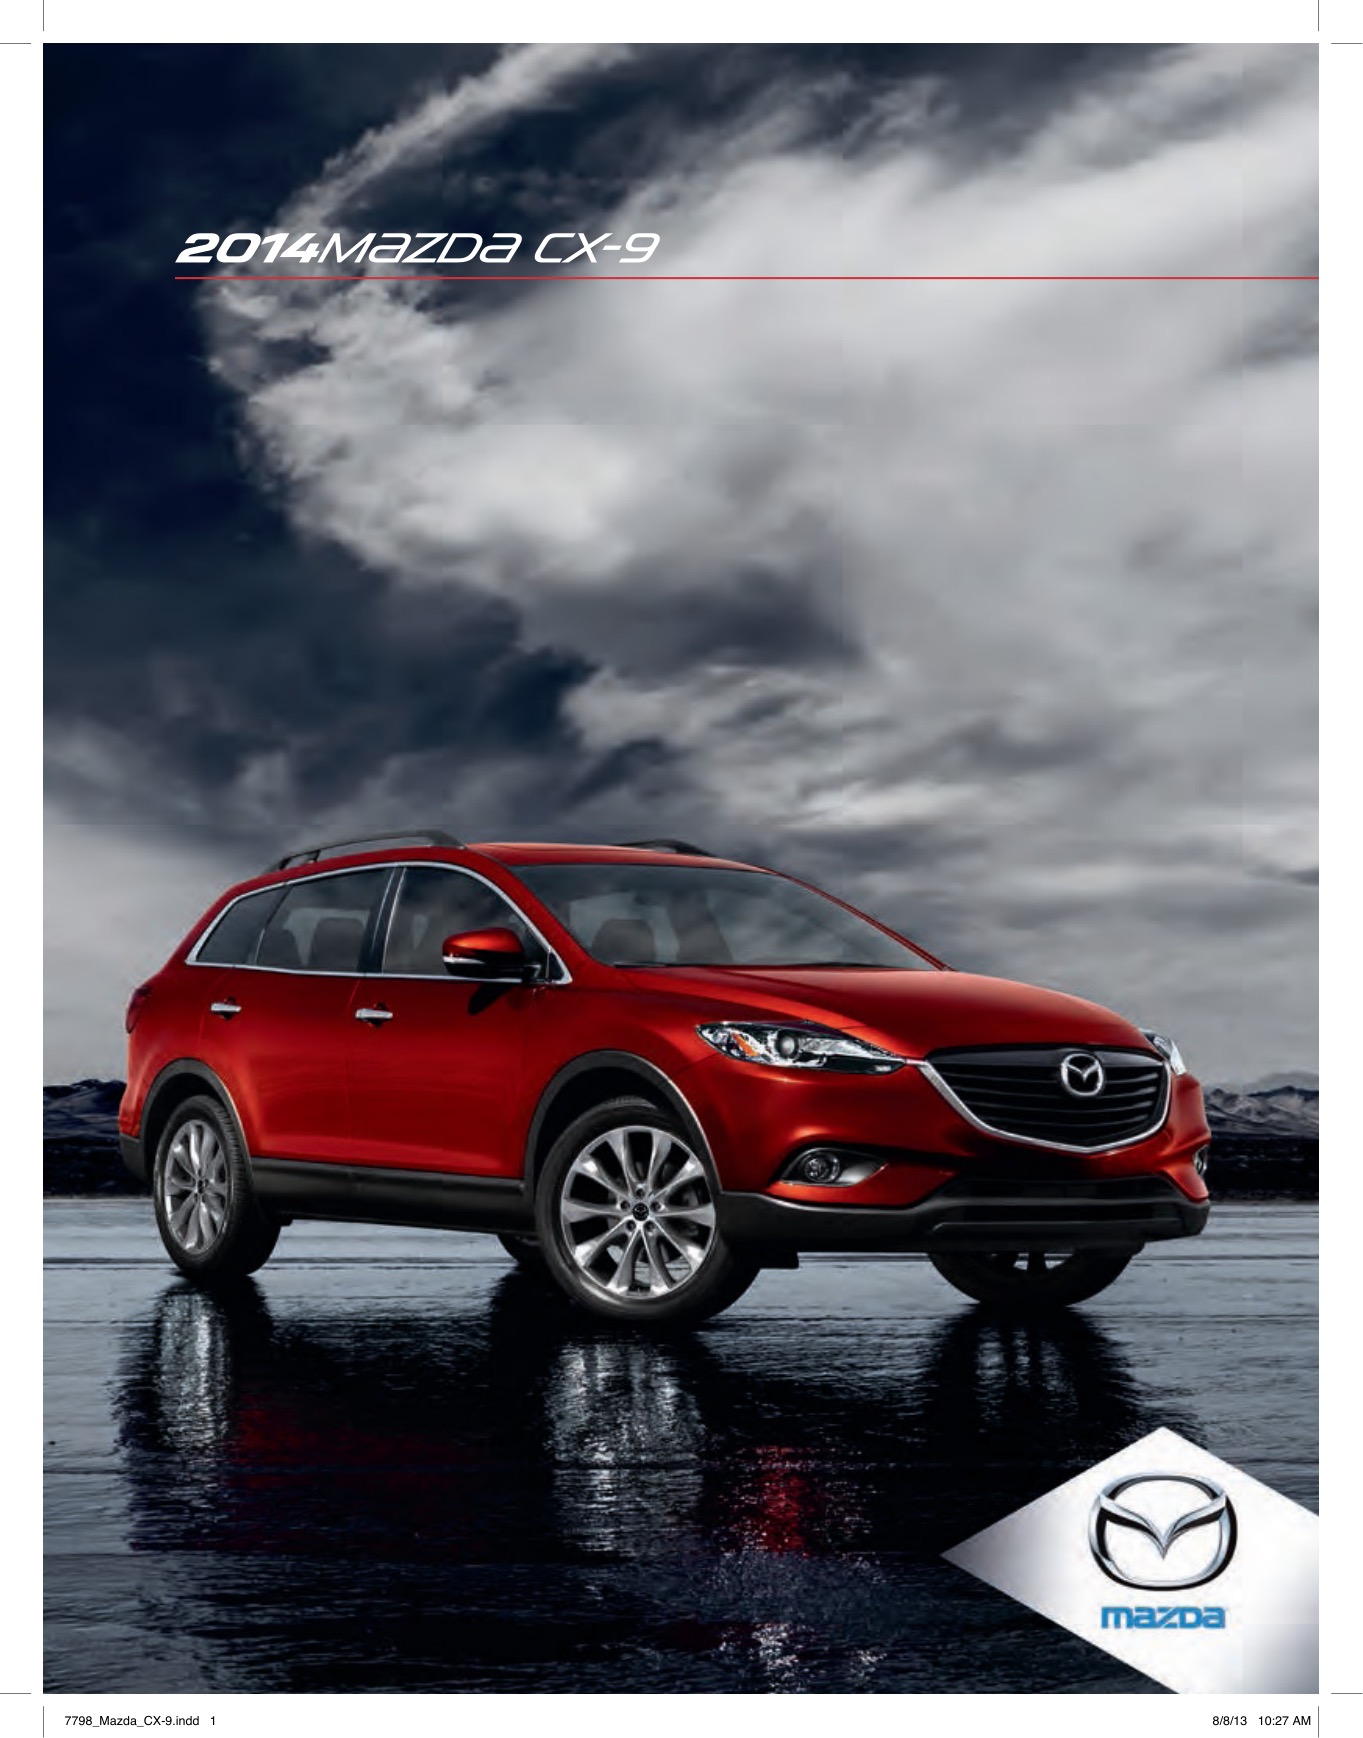 2014 Mazda CX-9 Brochure